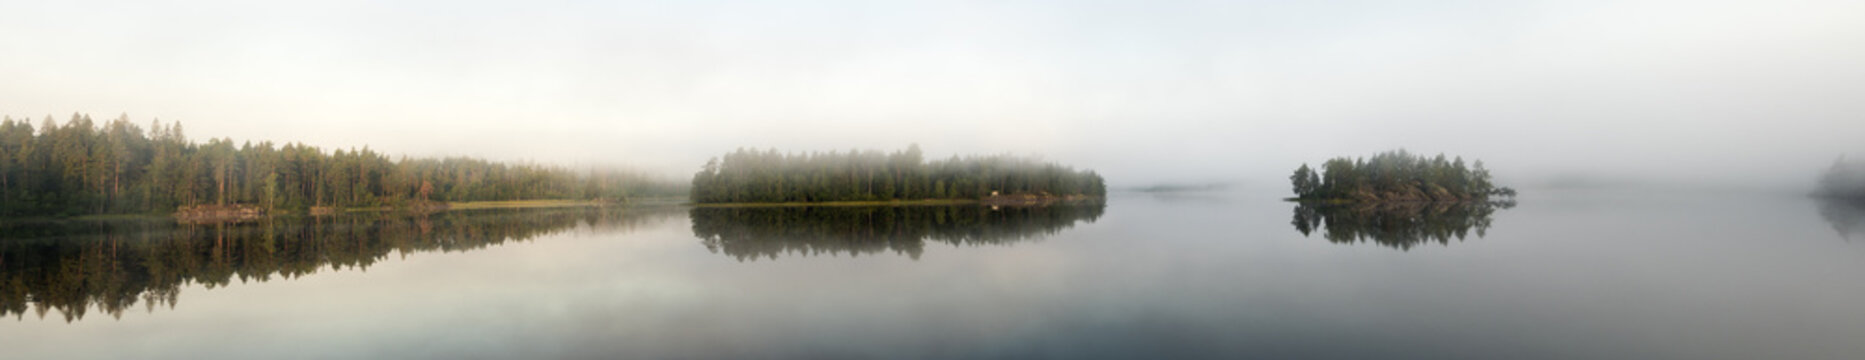 forest lake in summer with morning mist © Maslov Dmitry